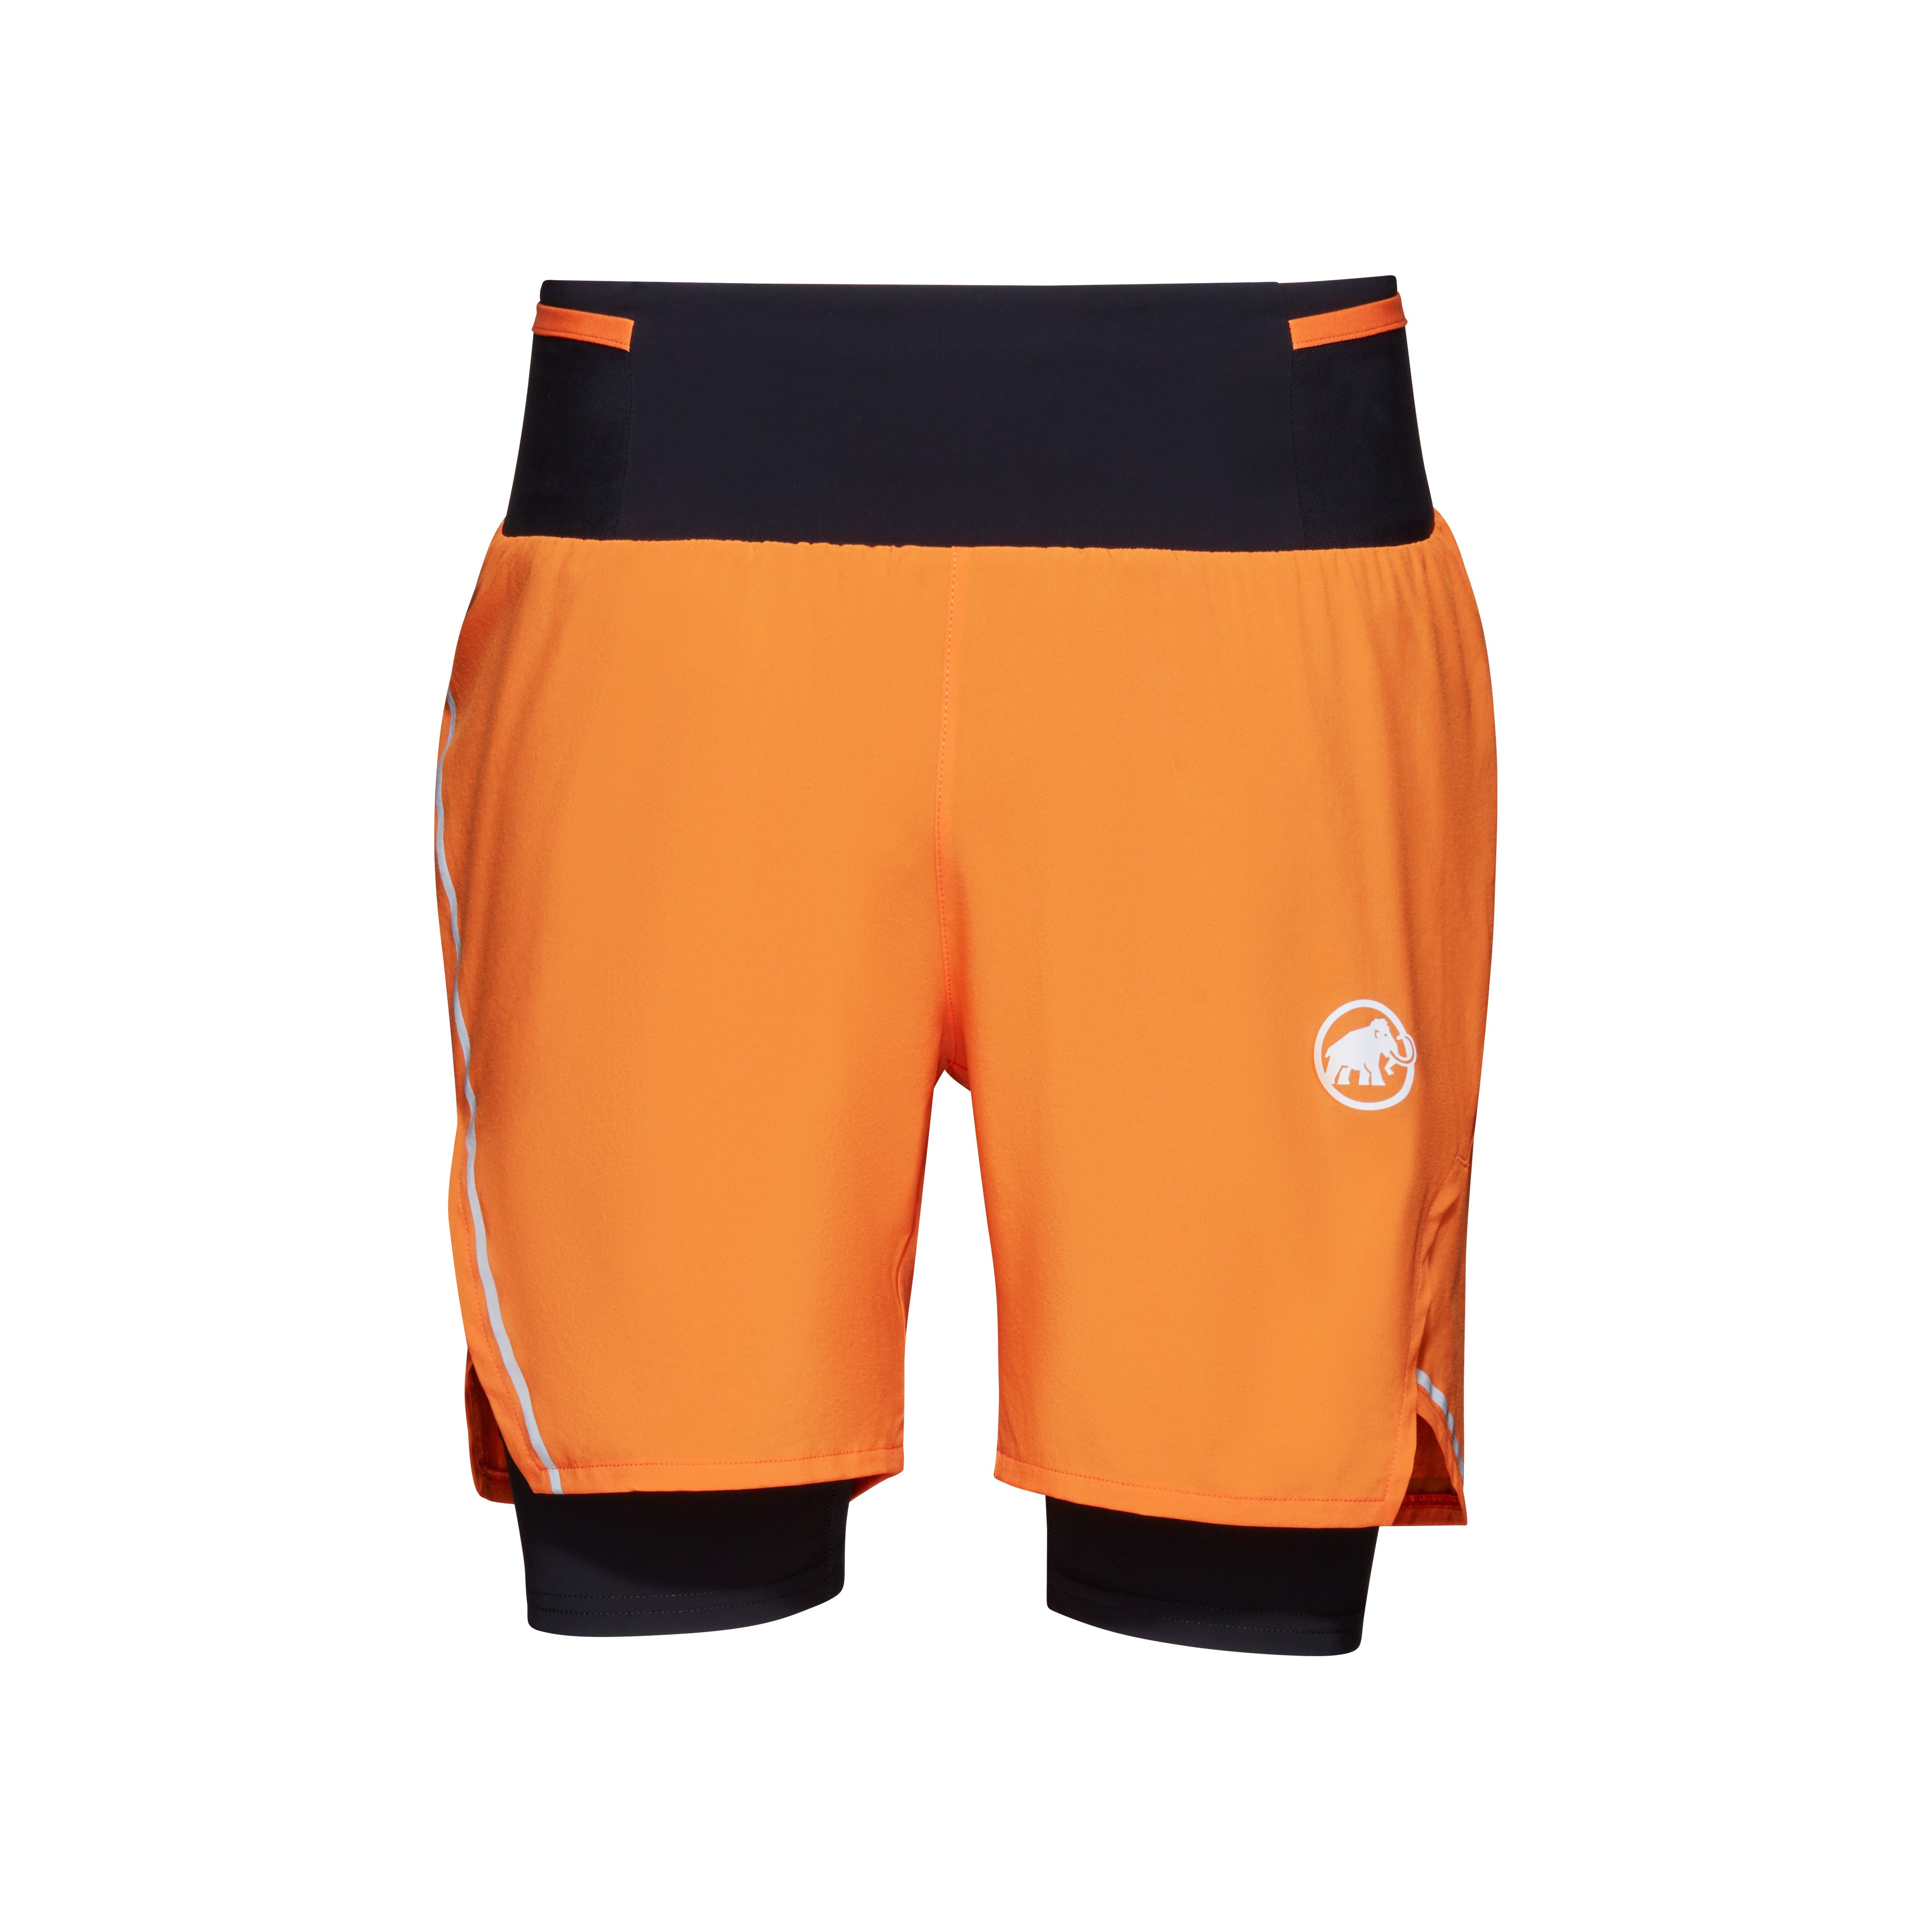 Aenergy TR 2 in 1 Shorts Men - dark tangerine-black, UK 28 thumbnail